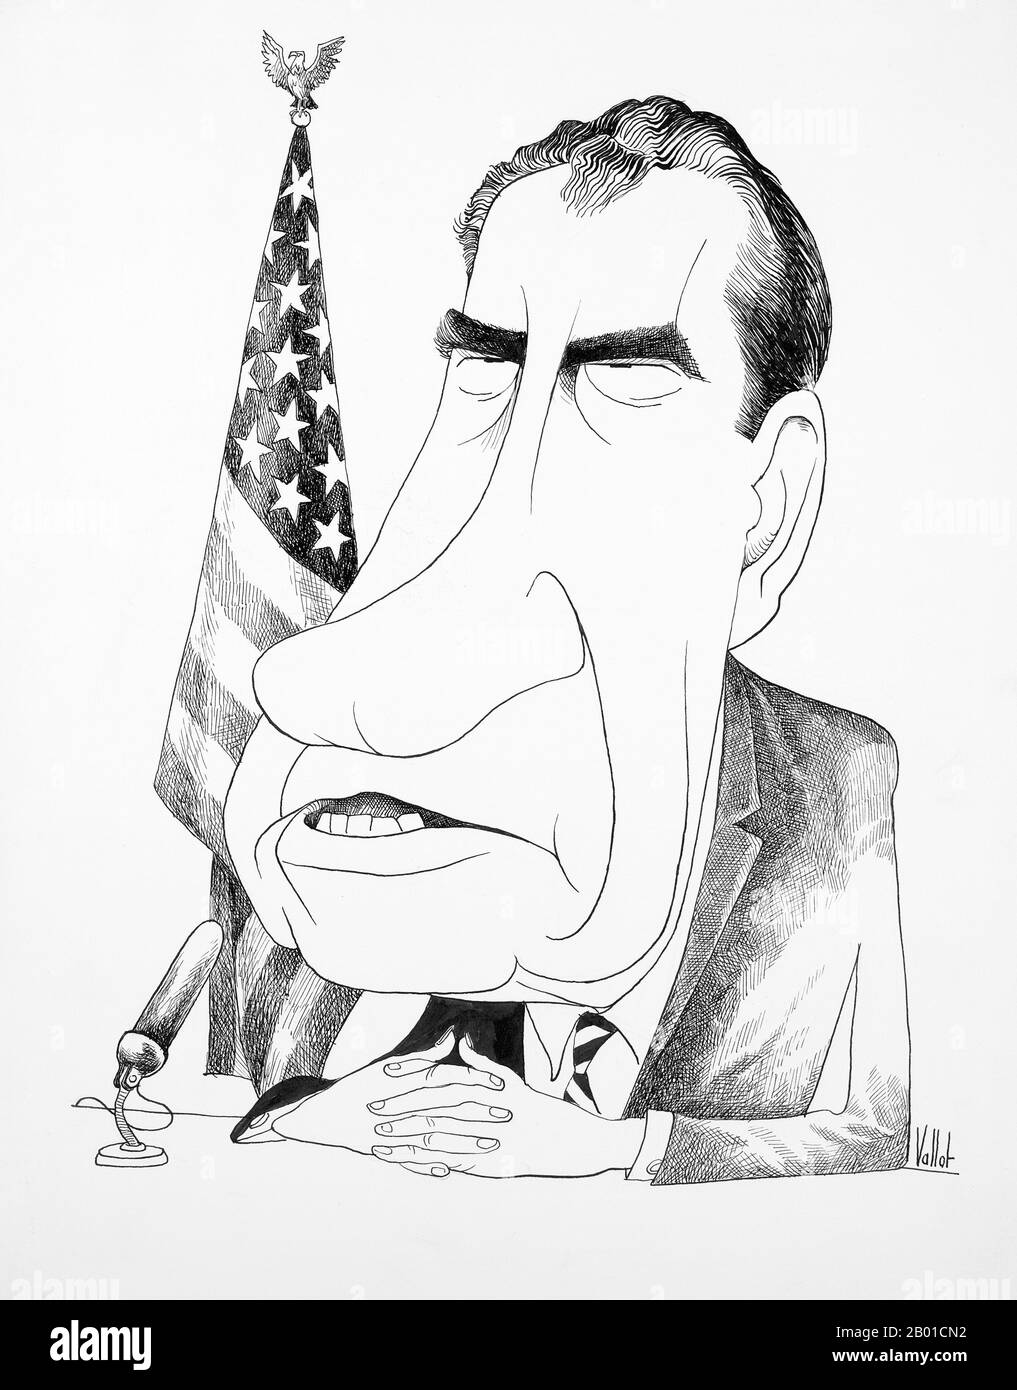 USA: Richard Nixon (9 gennaio 1913 - 22 aprile 1994) con le mani piegate, seduto davanti ad un microfono davanti ad una bandiera americana. Caricatura di Edmund Valtman (31 maggio 1914 - 12 gennaio 2005, pubblico dominio), 1970. Richard Milhous Nixon è stato il 37th presidente degli Stati Uniti, dal 1969 al 1974. Nixon è l'unico presidente ad aver rassegnato le dimissioni. Nixon ereditò la guerra del Vietnam dai suoi predecessori Kennedy e Johnson. Il coinvolgimento americano in Vietnam era ampiamente impopolare; anche se Nixon inizialmente intensificò la guerra in quel paese, successivamente si mosse per porre fine al coinvolgimento degli Stati Uniti. Foto Stock